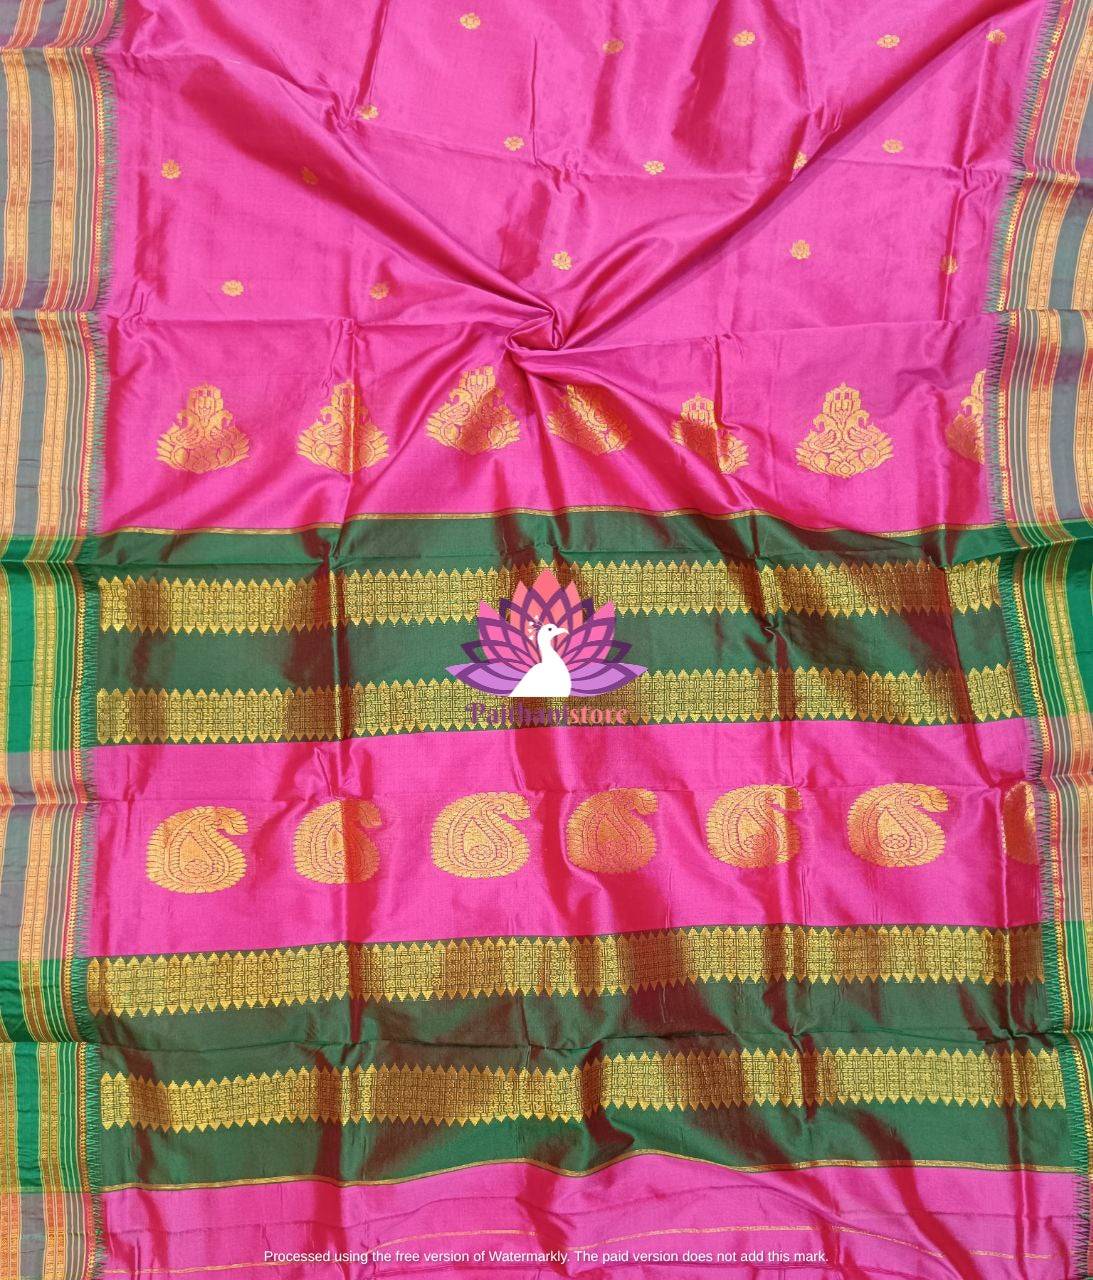 Narayan Peth Saree - Elegant and Timeless Traditional Indian Saree